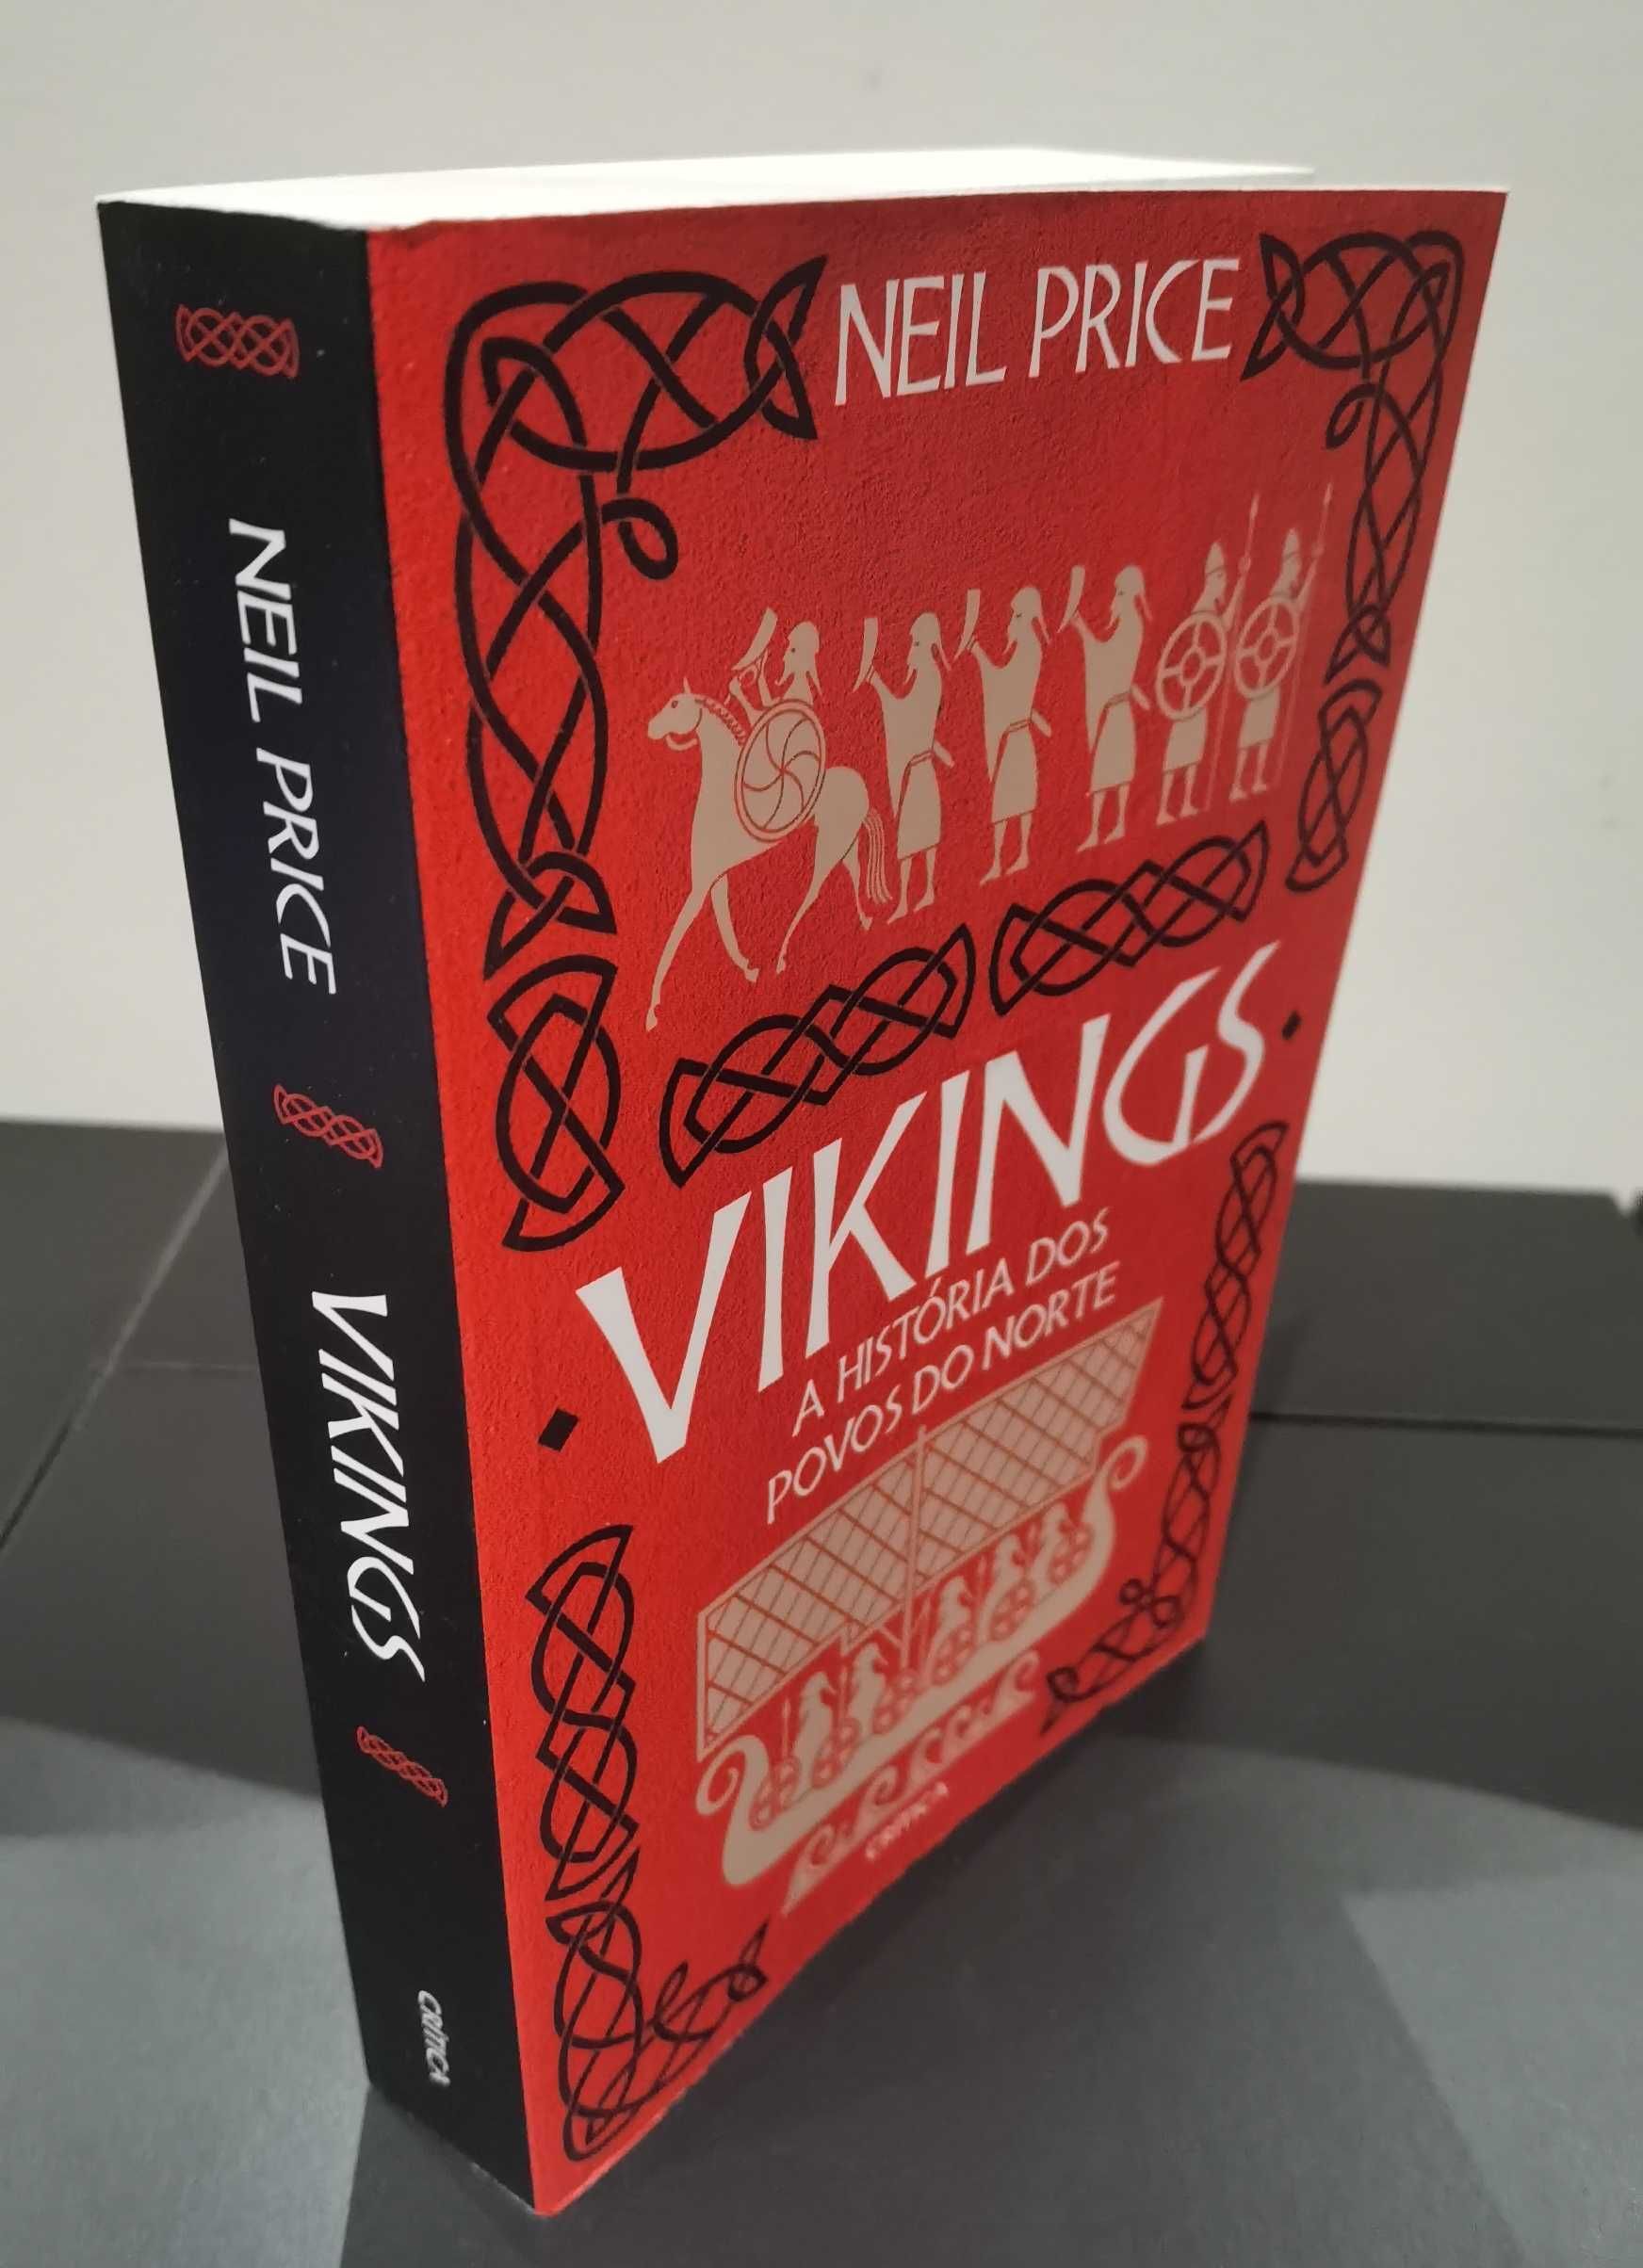 Vikings - A História dos Povos do Norte